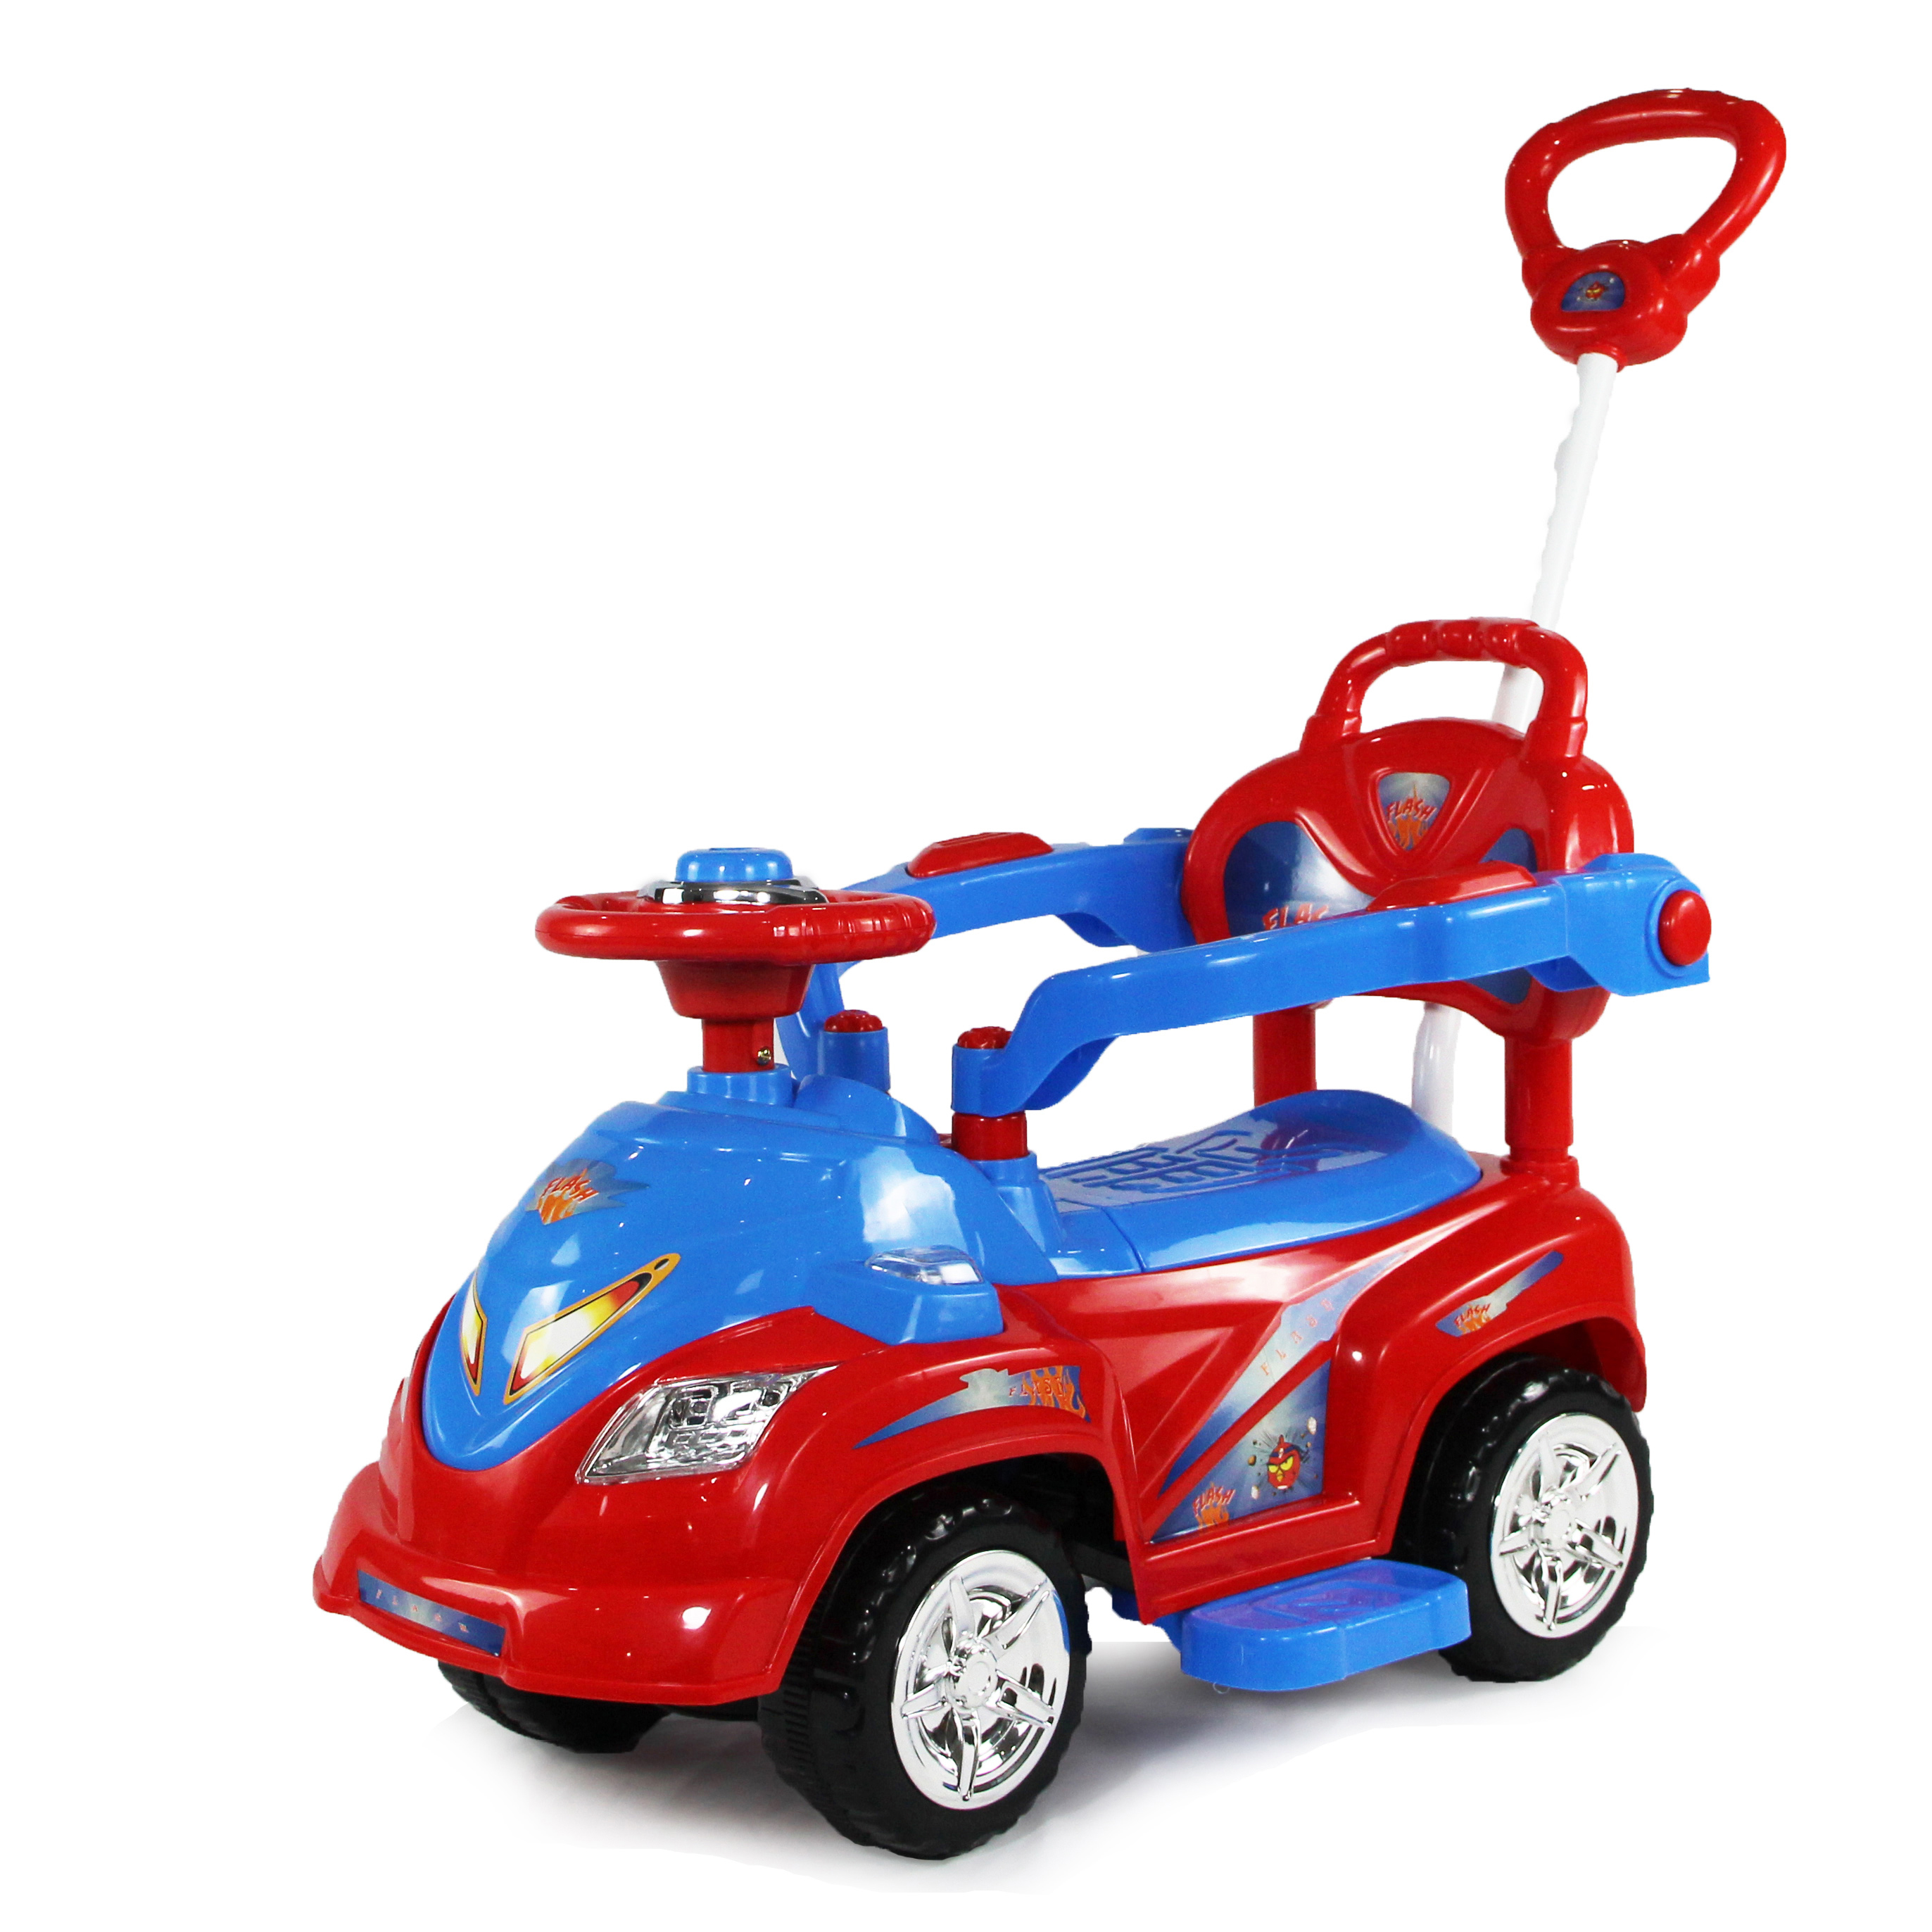 Darilna igrača za malčke, ki se vozijo na SM168-A1